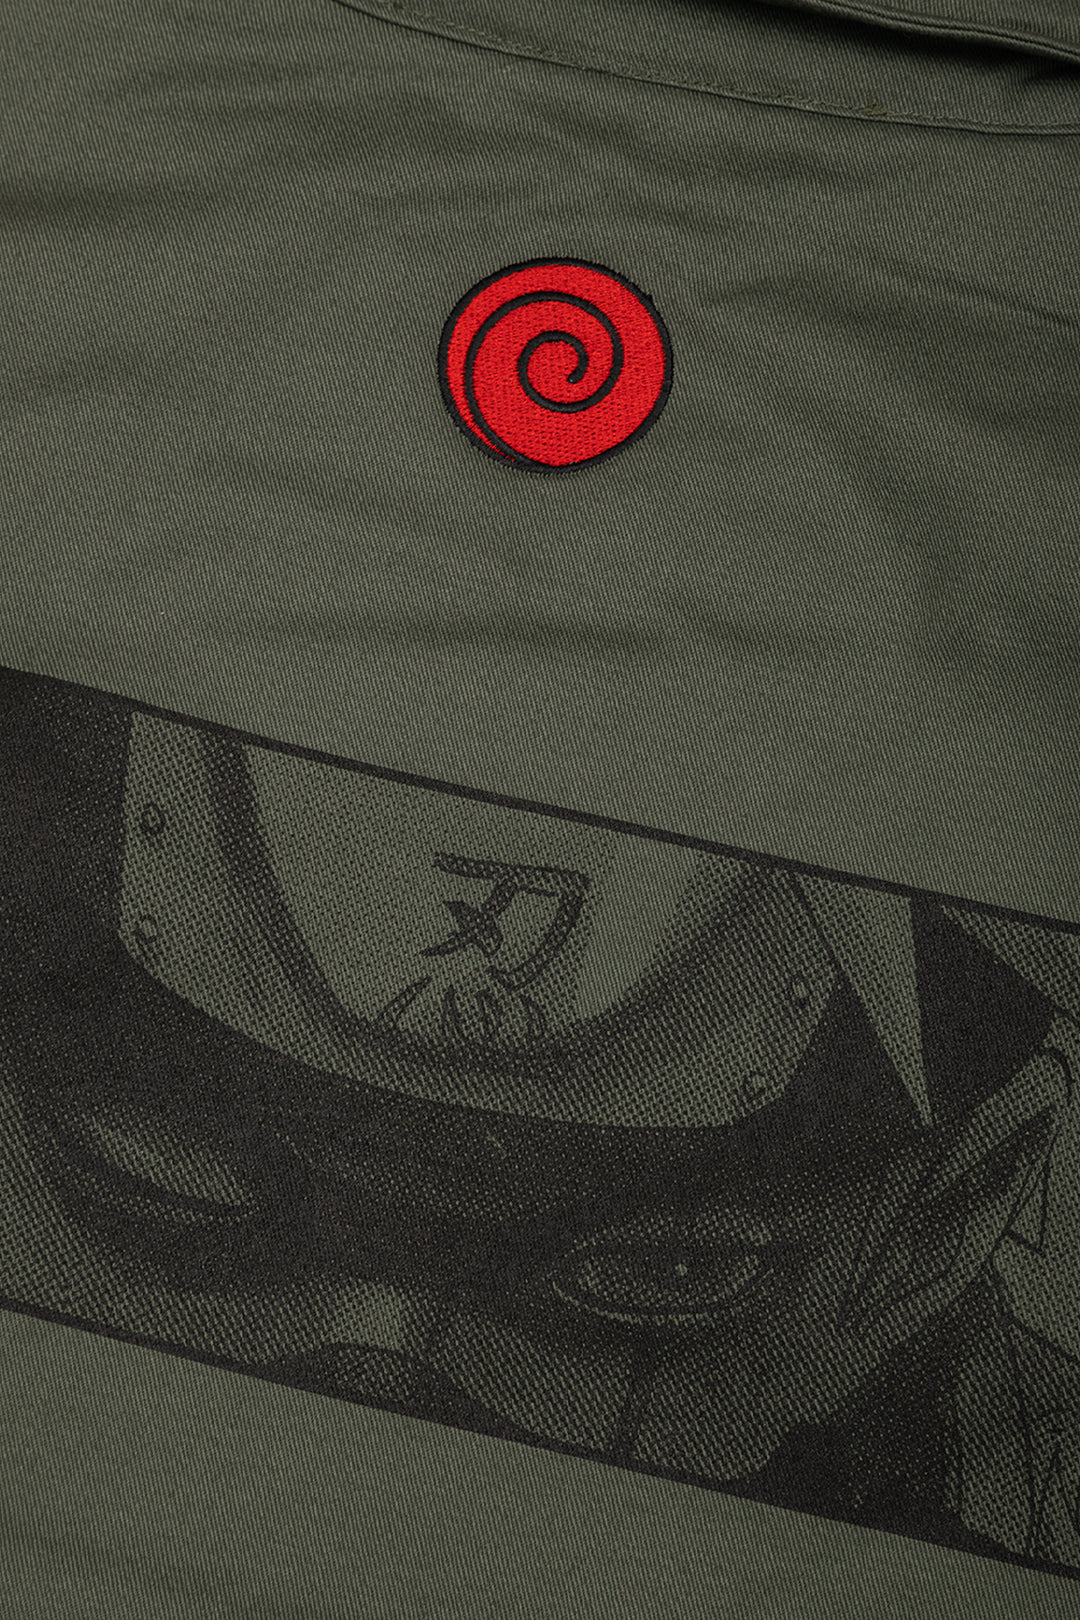 Naruto Kakashi Service Jacket - Olive